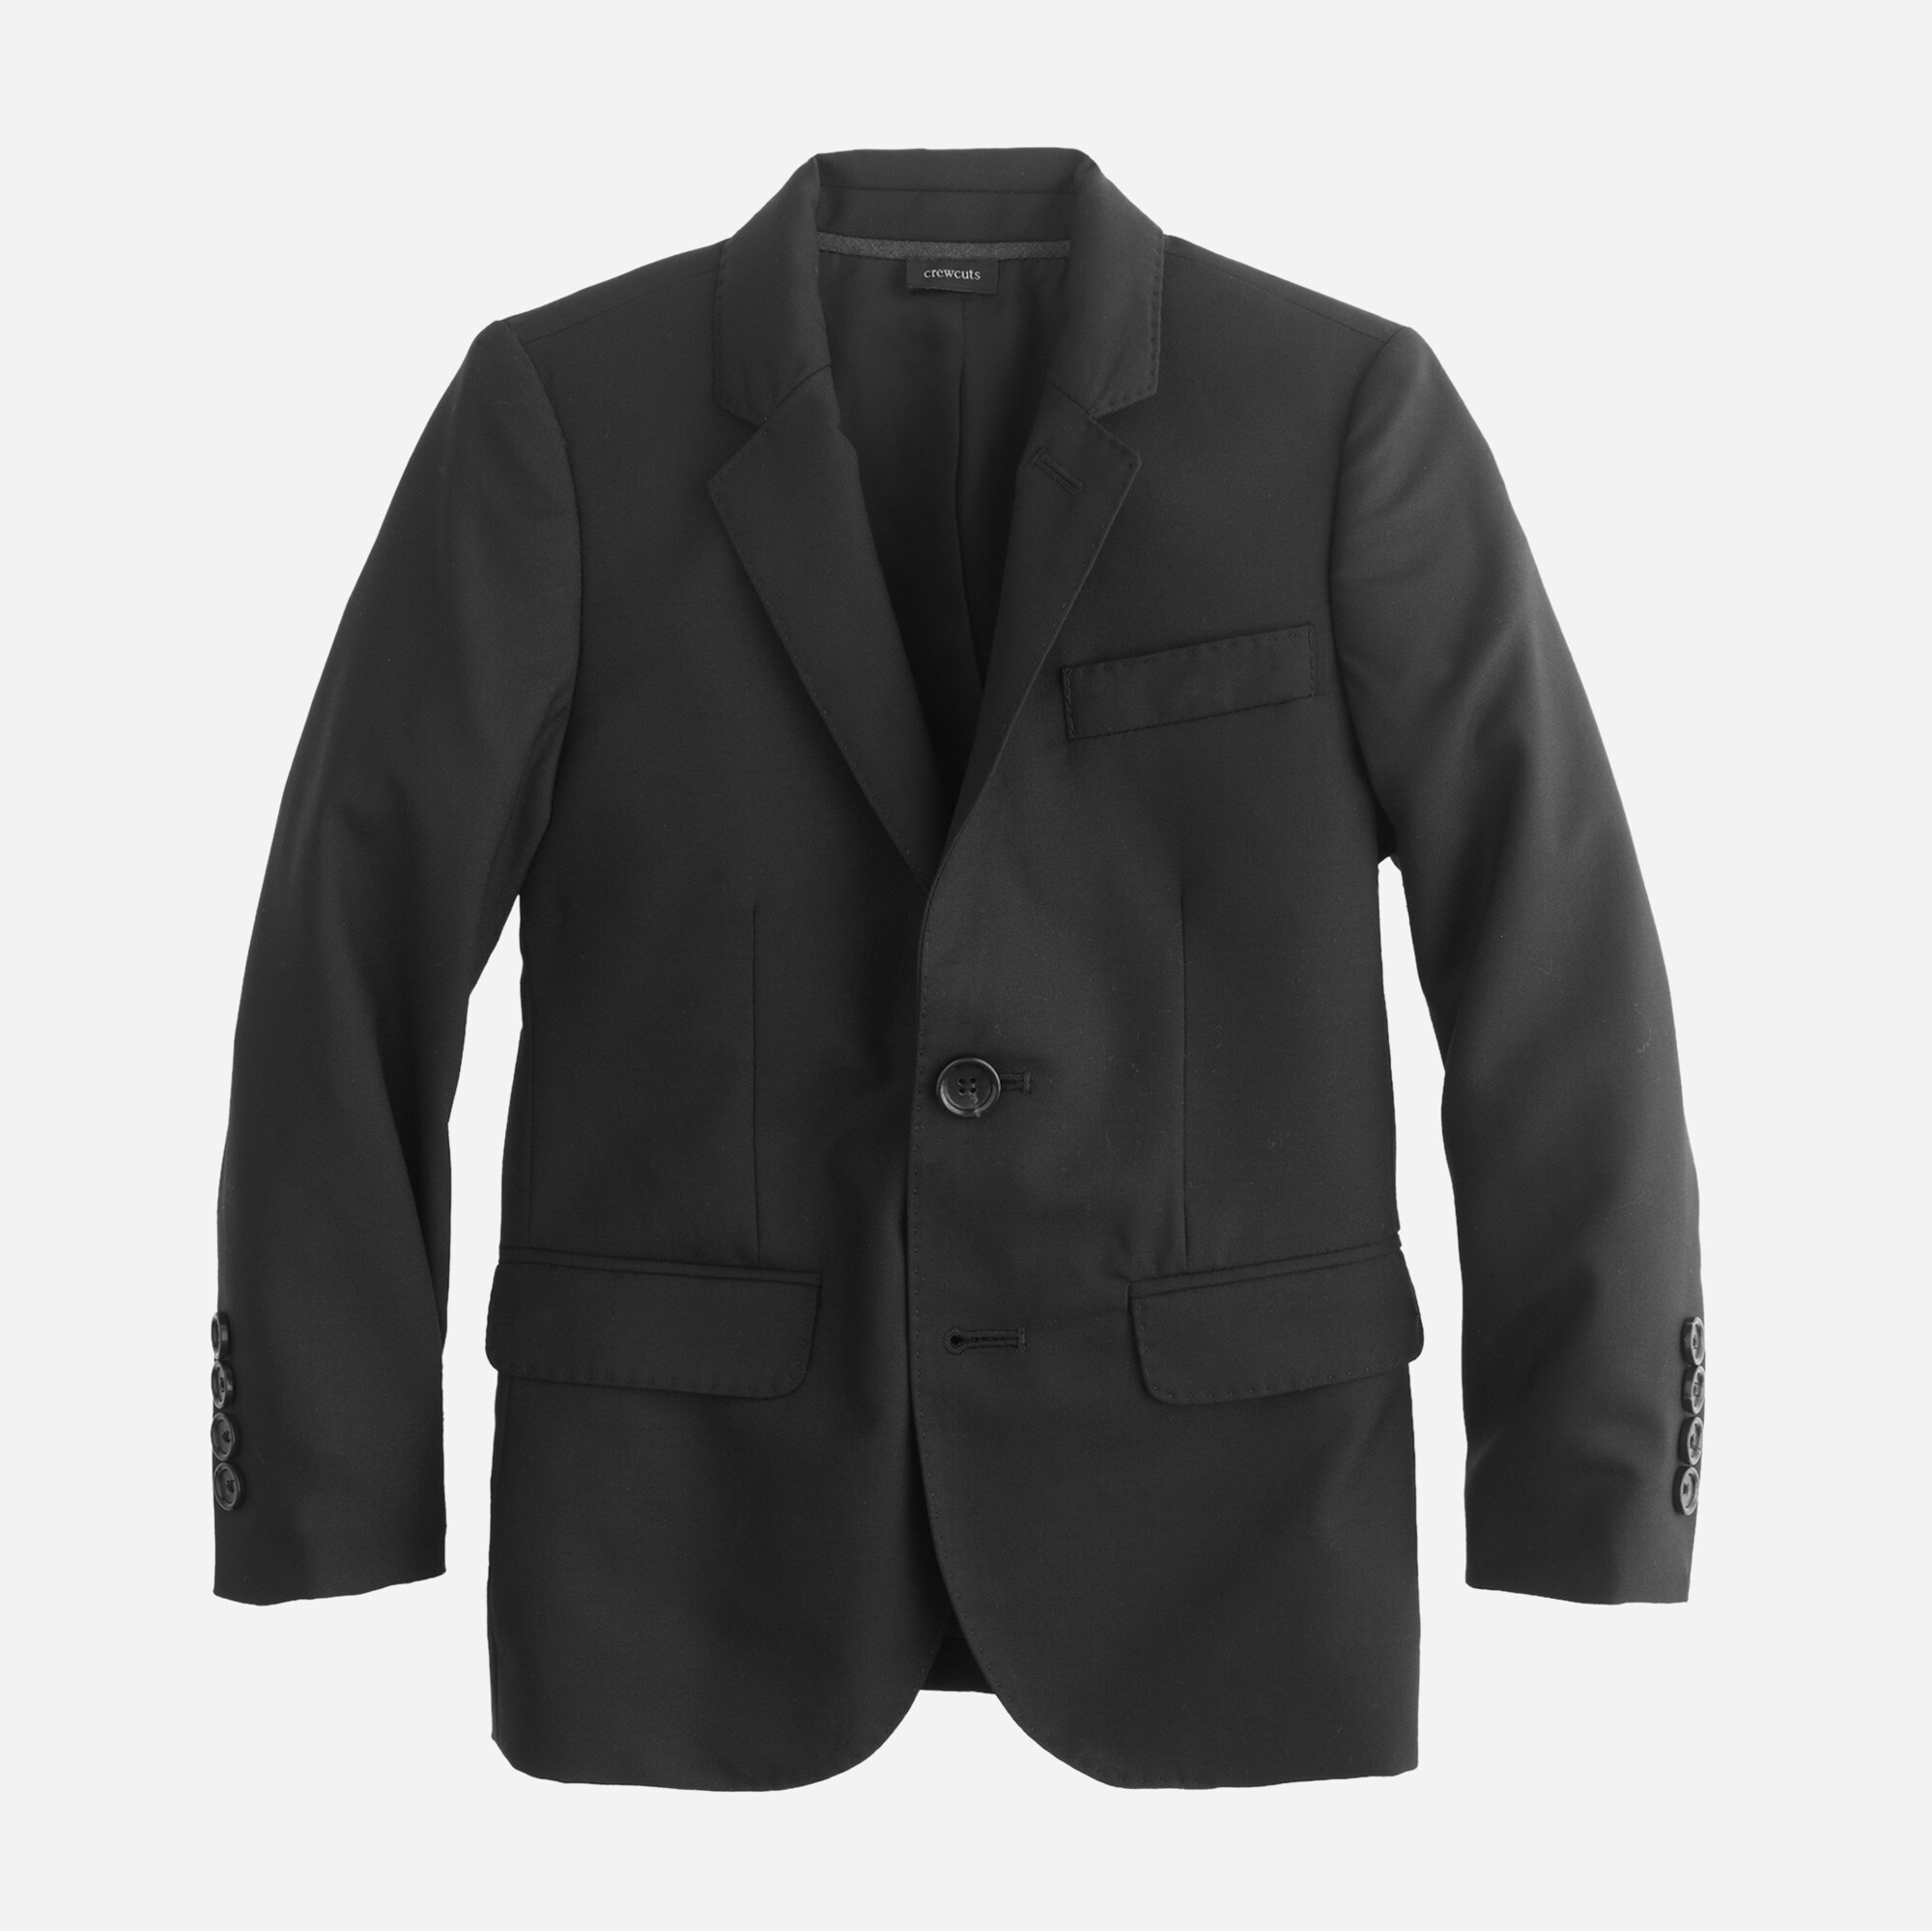  Boys' Ludlow suit jacket in Italian wool